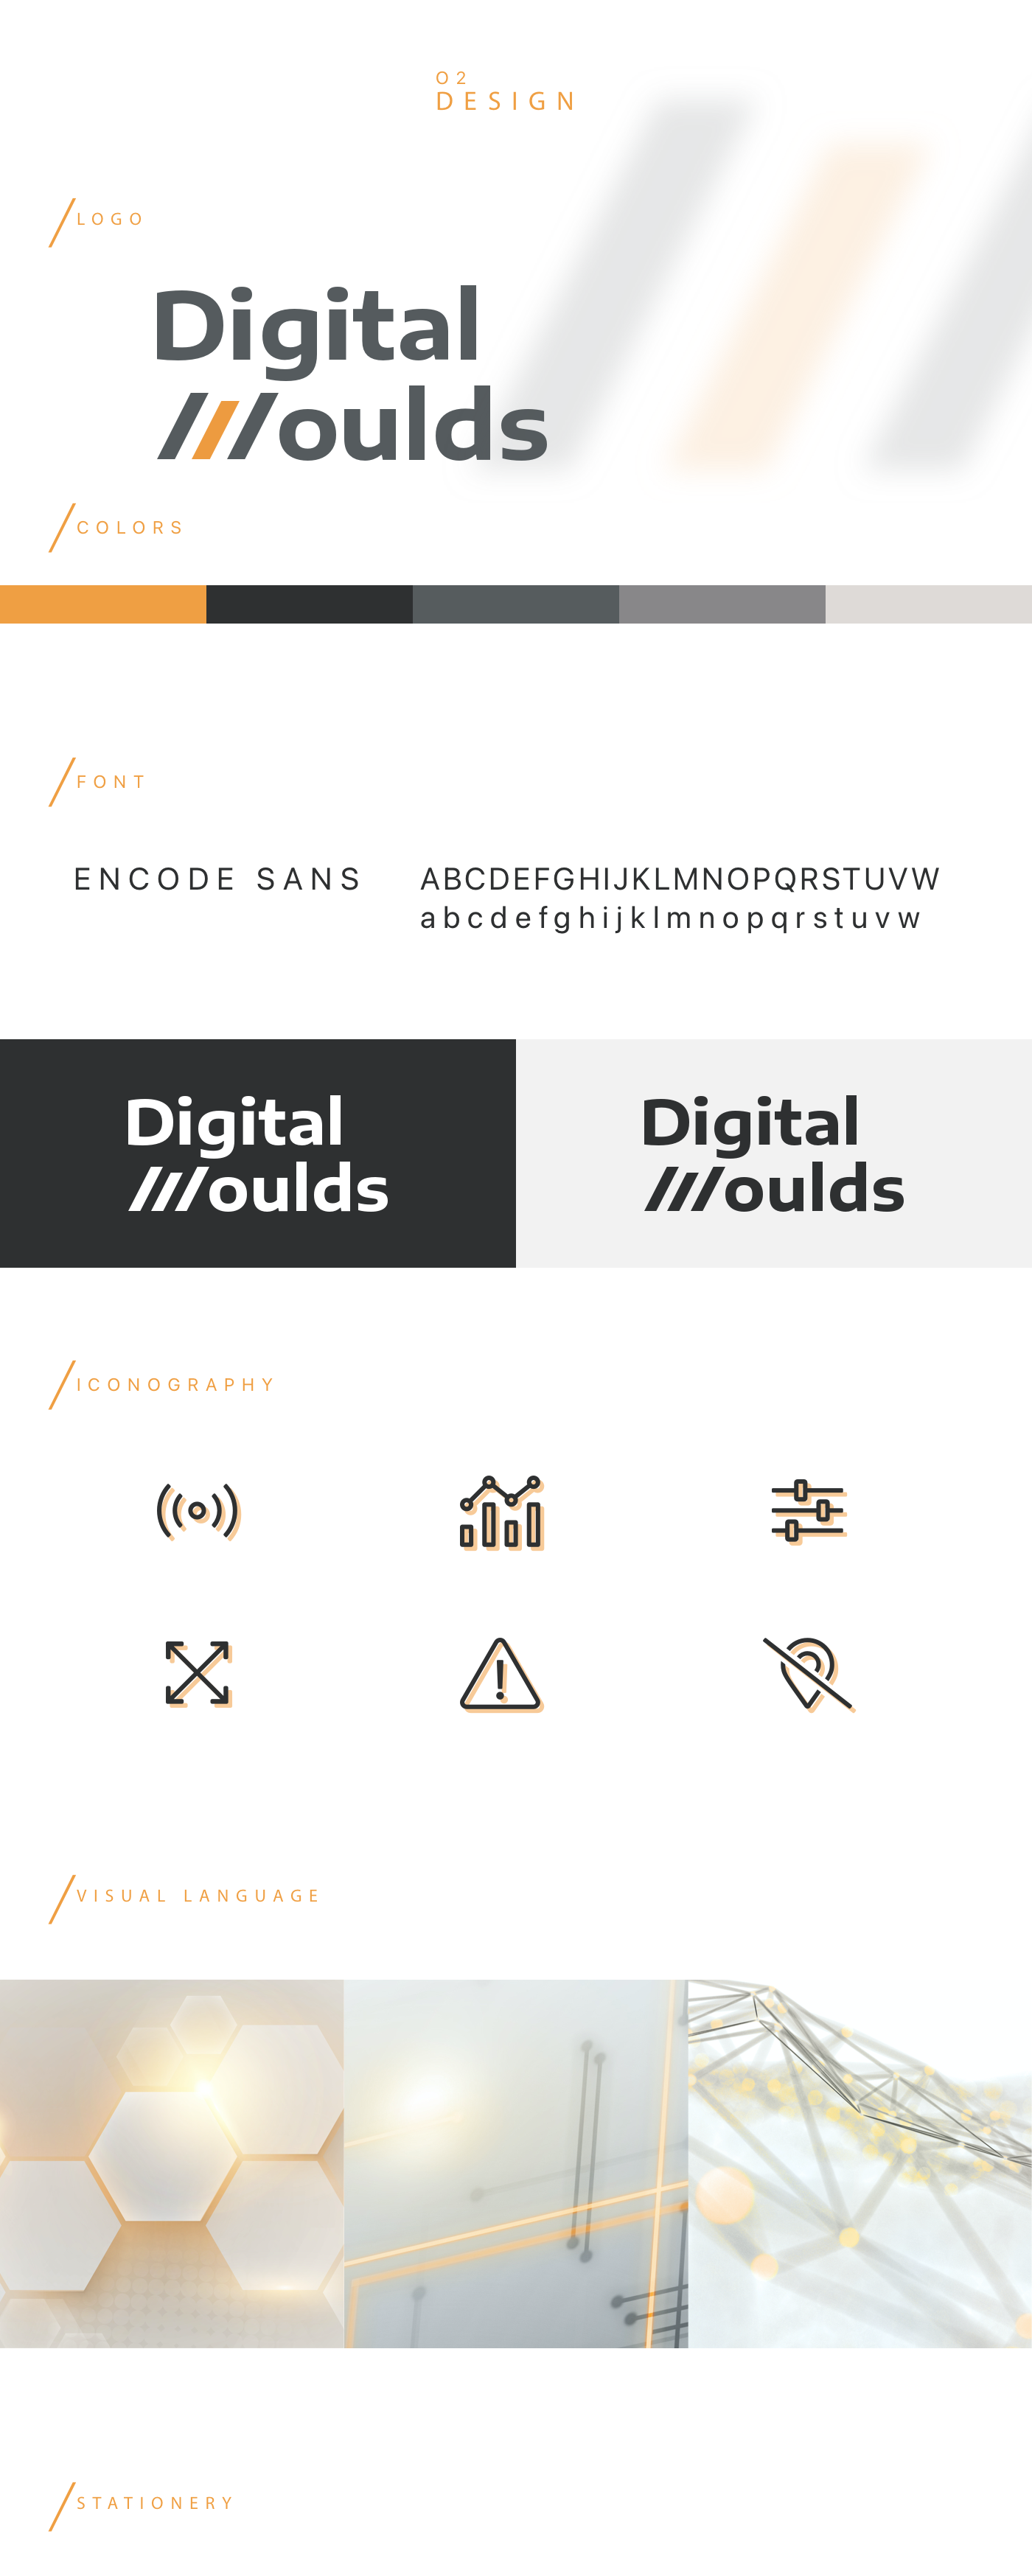 Digital Moulds Font Choice | Branding in Wien